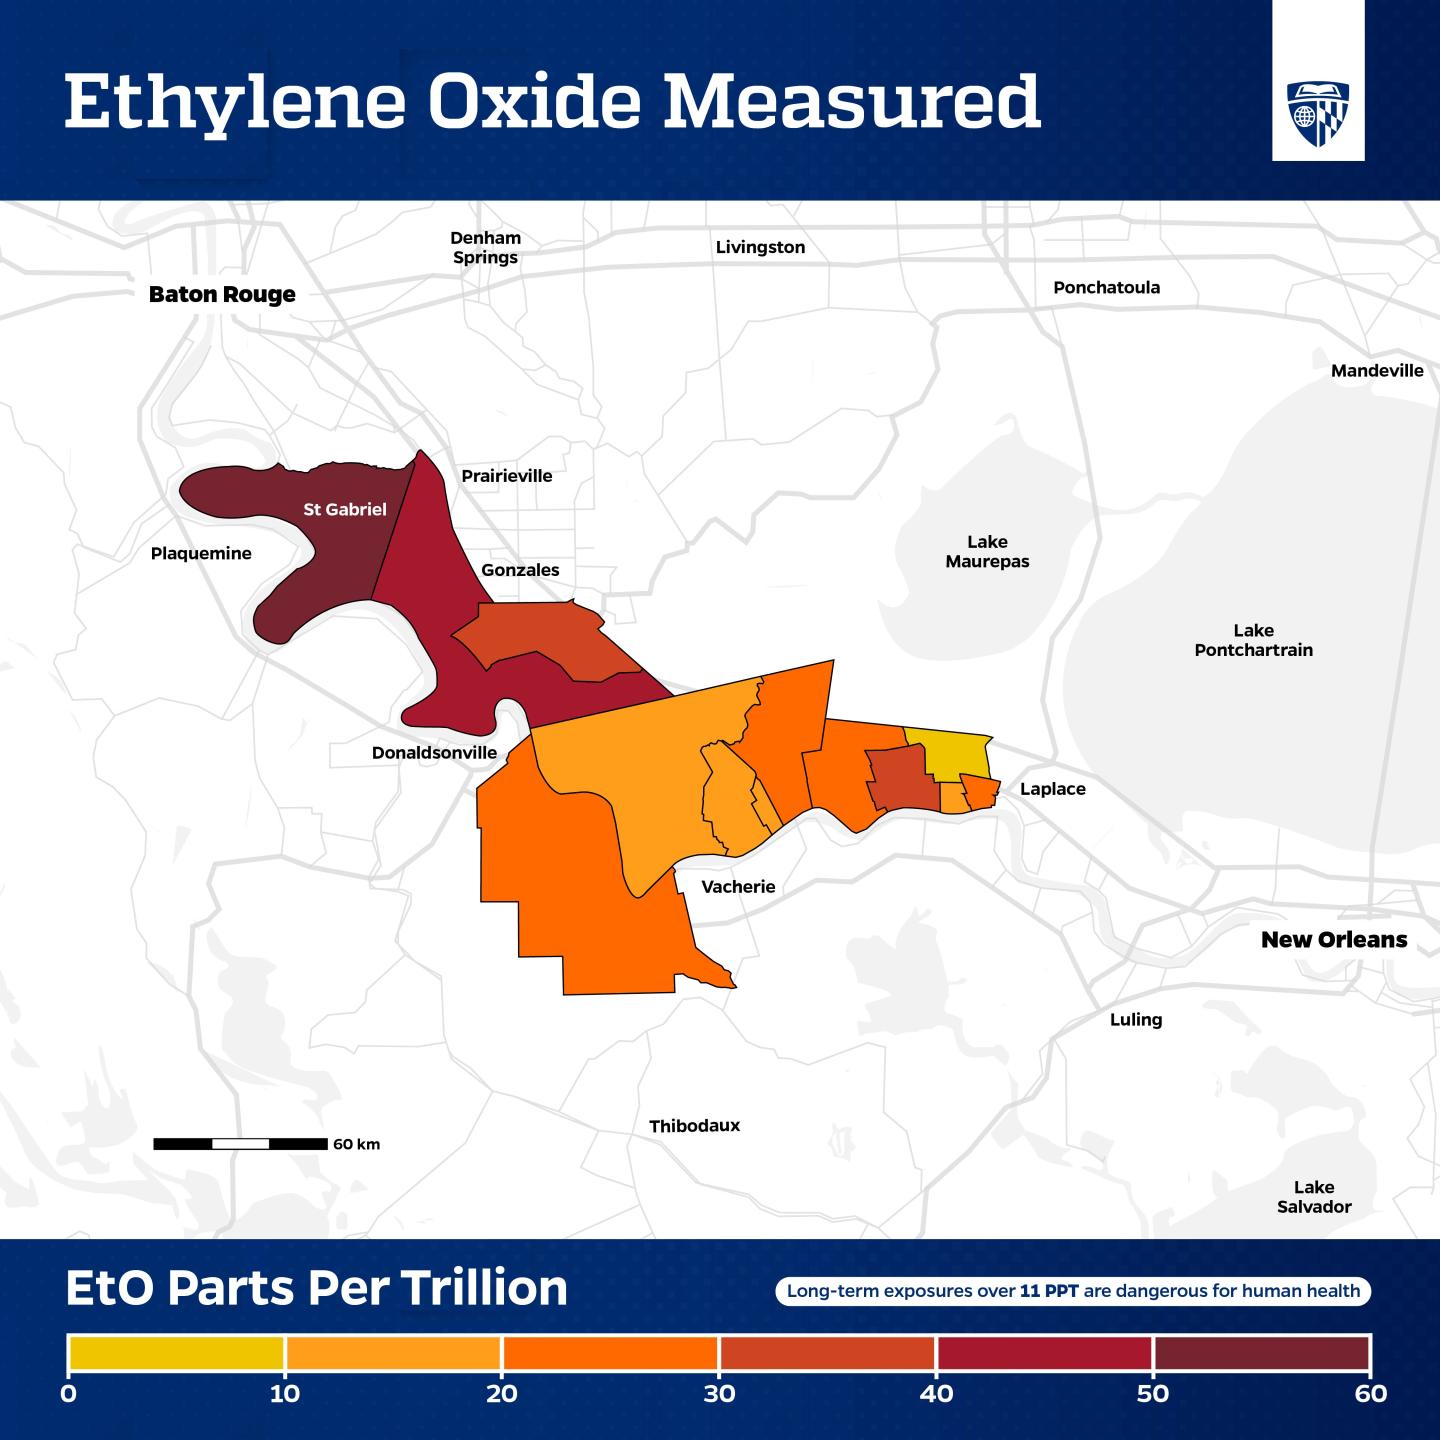 Ethylene oxide levels in Louisiana